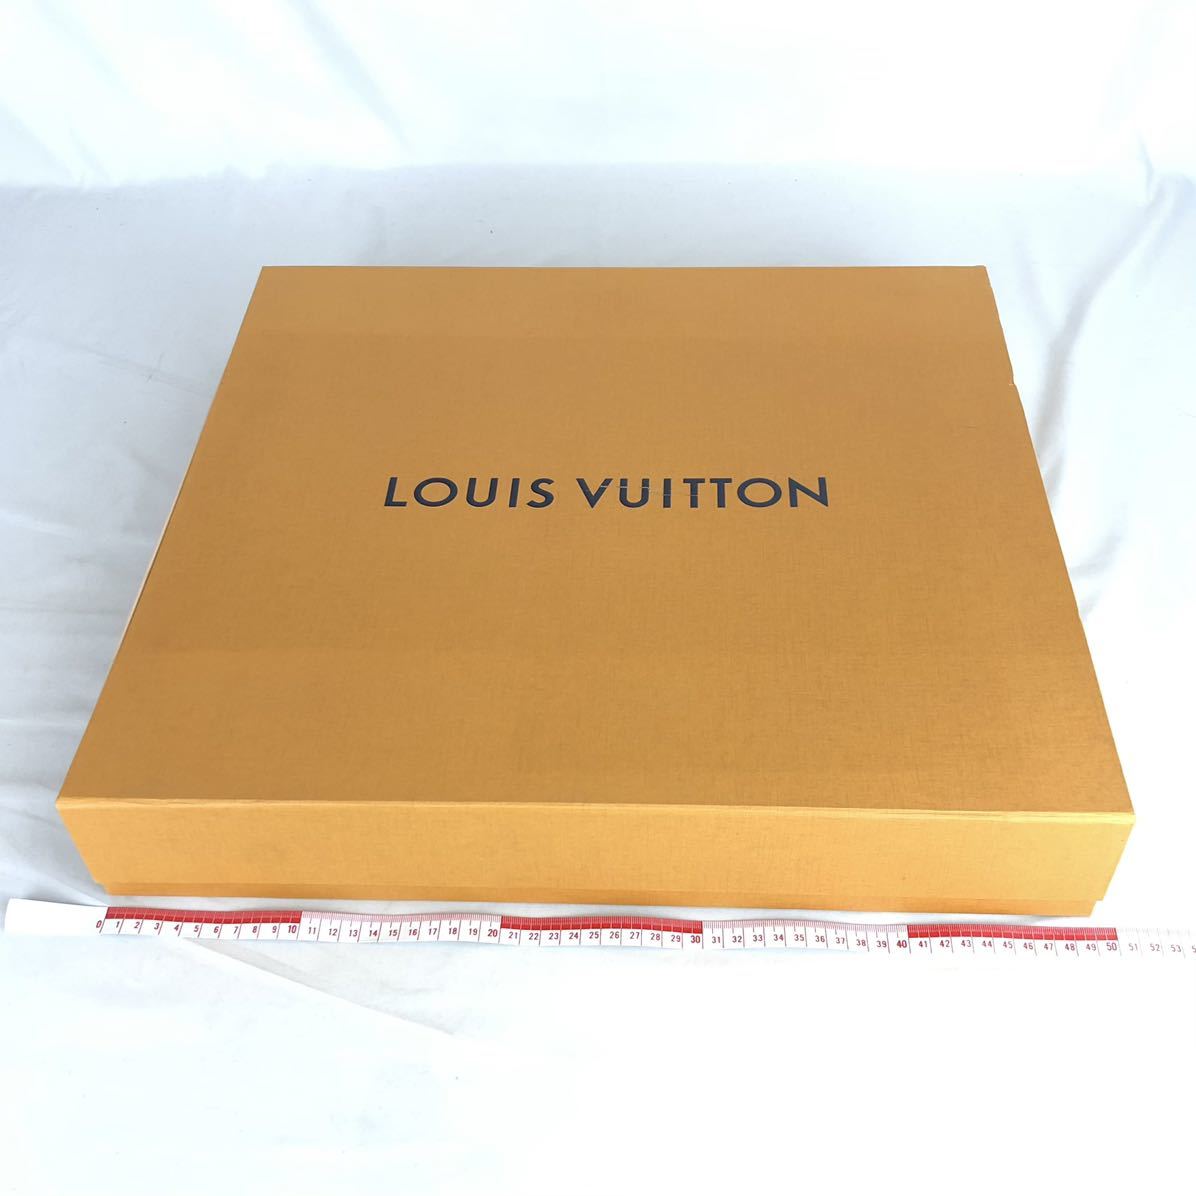 LOUIS VUITTON ルイヴィトン 空箱 まとめ 4箱 大型 収納ケース オレンジBOX 空き箱 箱_画像4